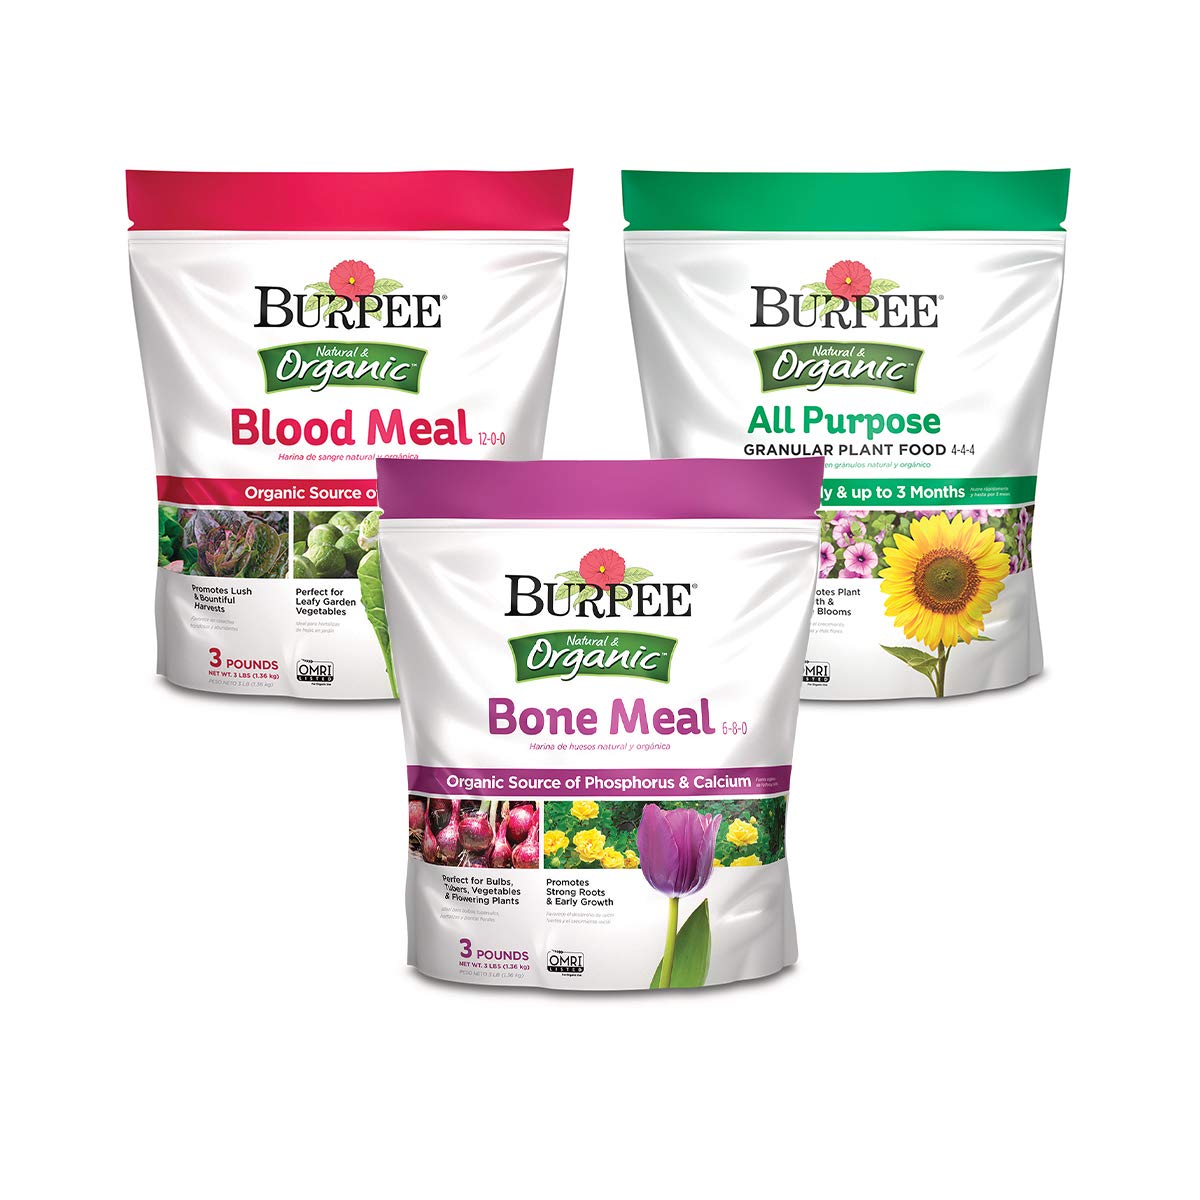 Burpee 99822 Organic Bone Meal Fertilizer, 2 Pack